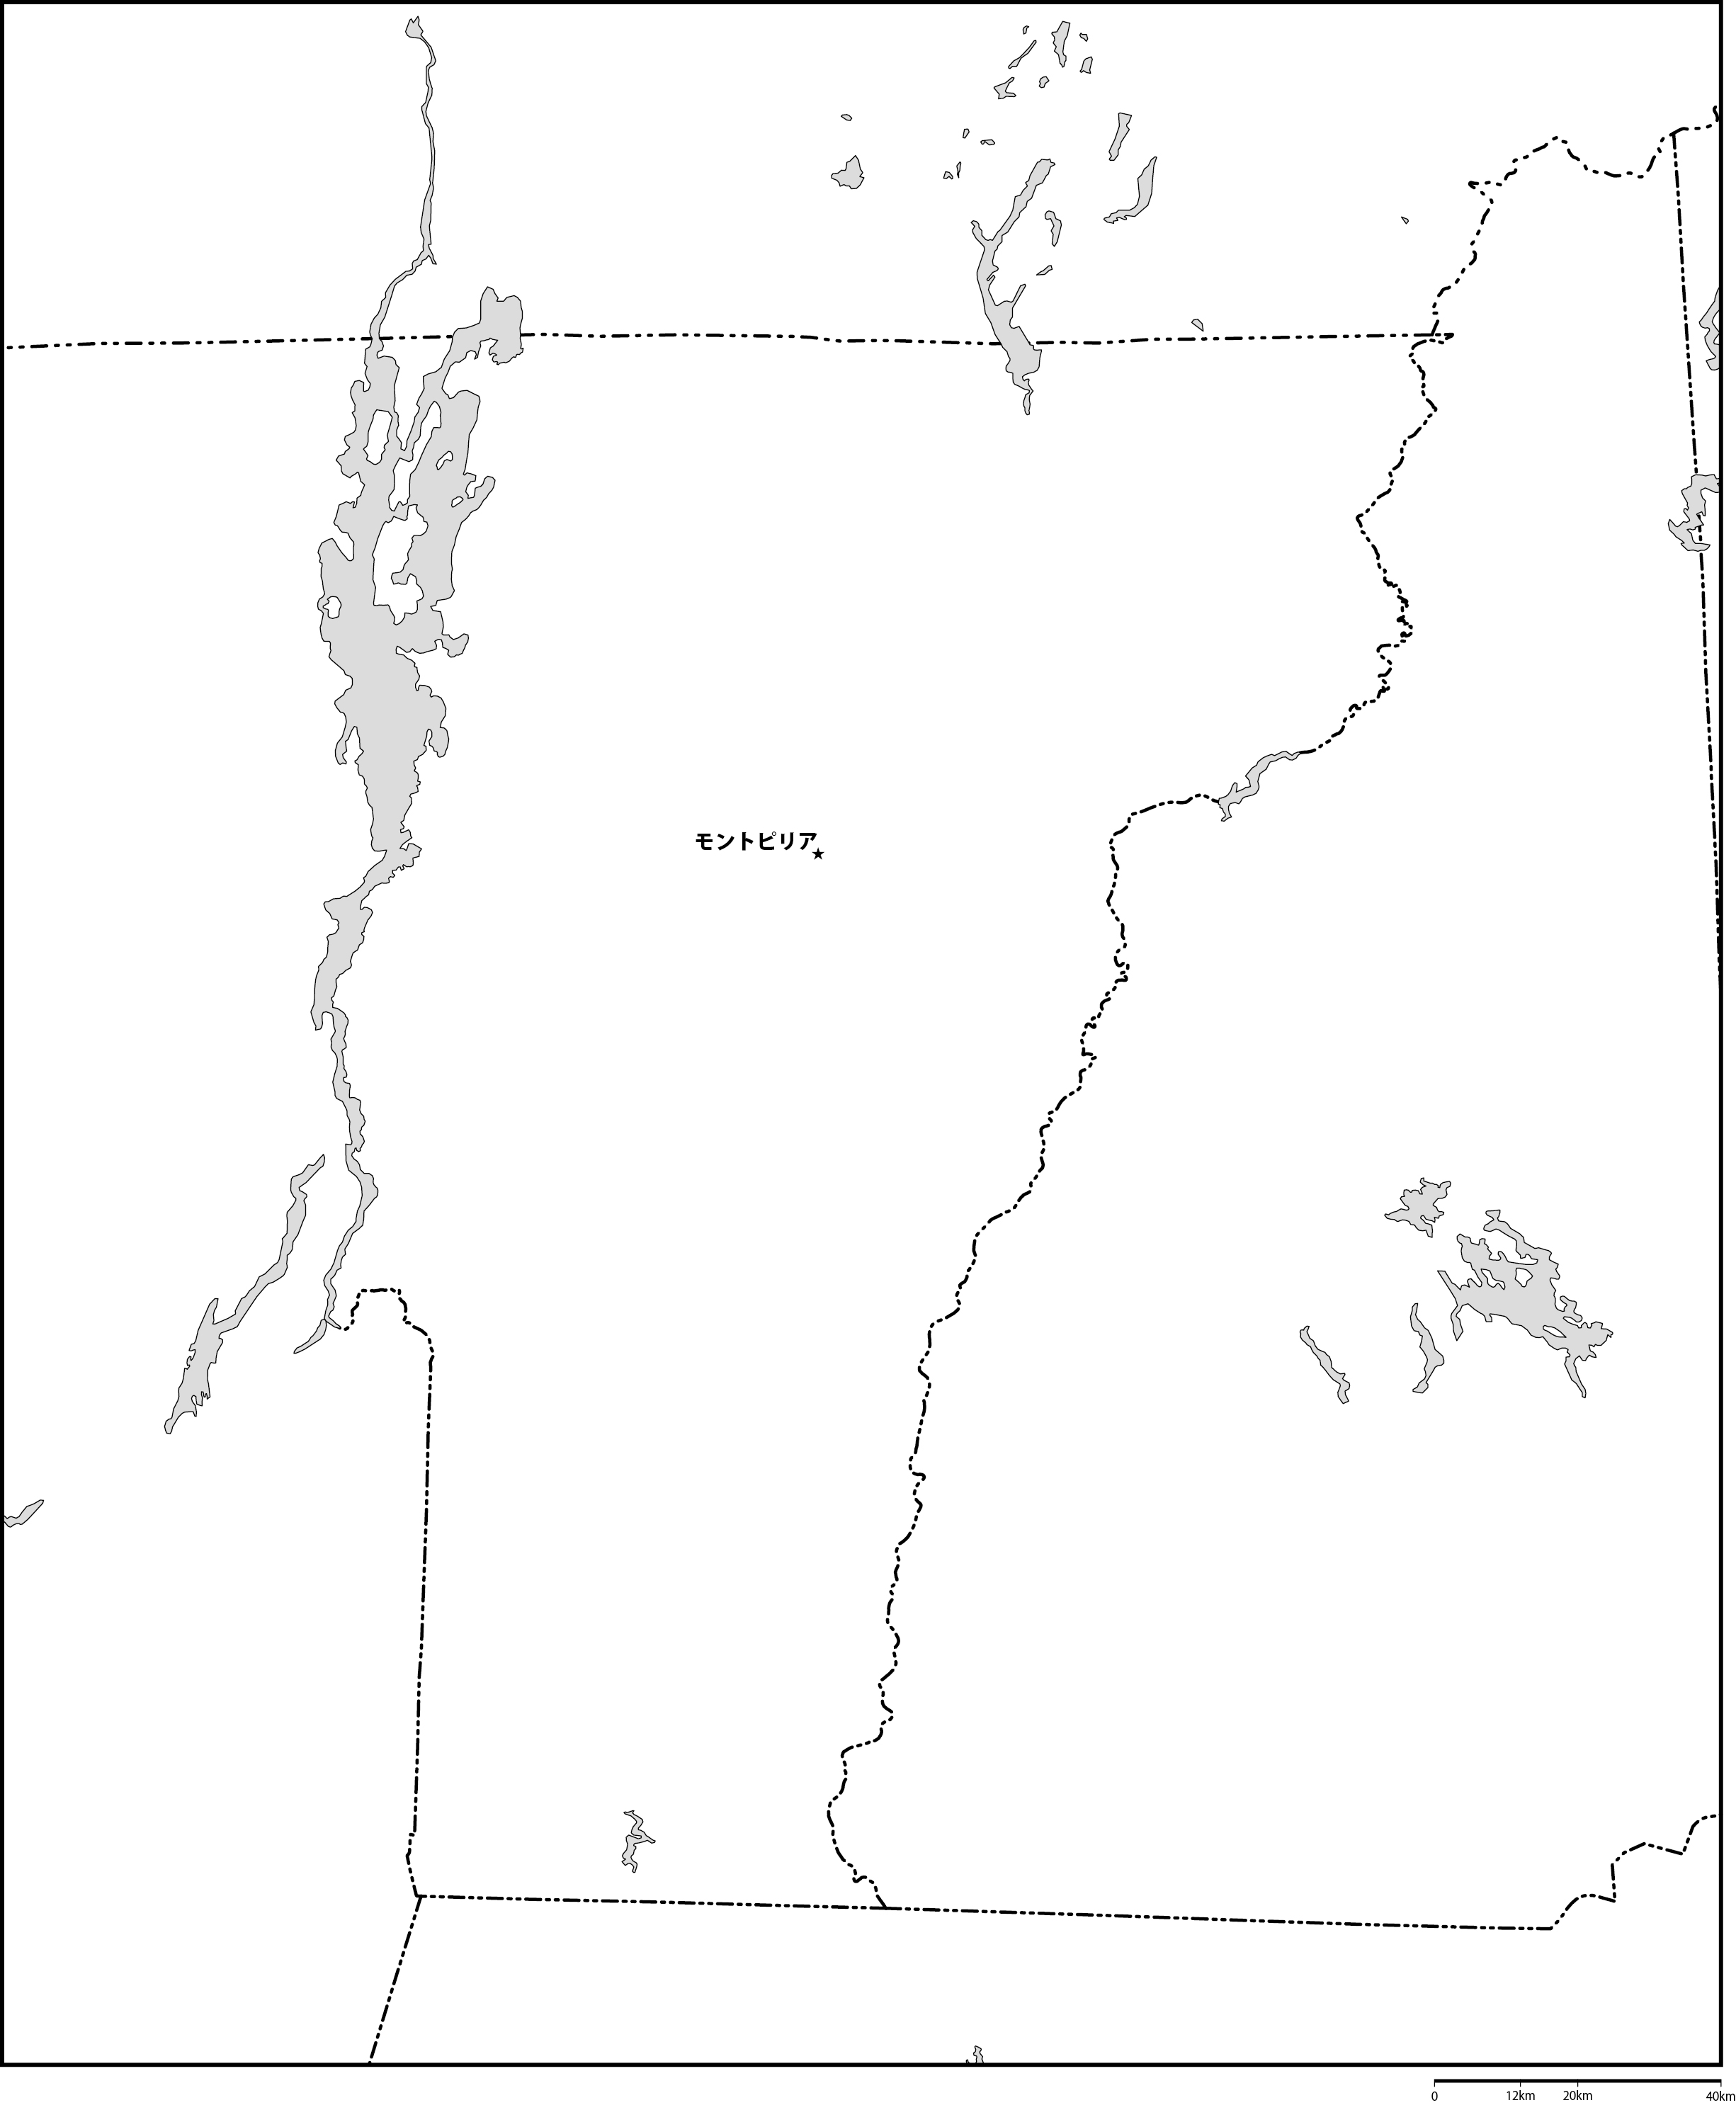 バーモント州白地図州都あり(日本語)フリーデータの画像